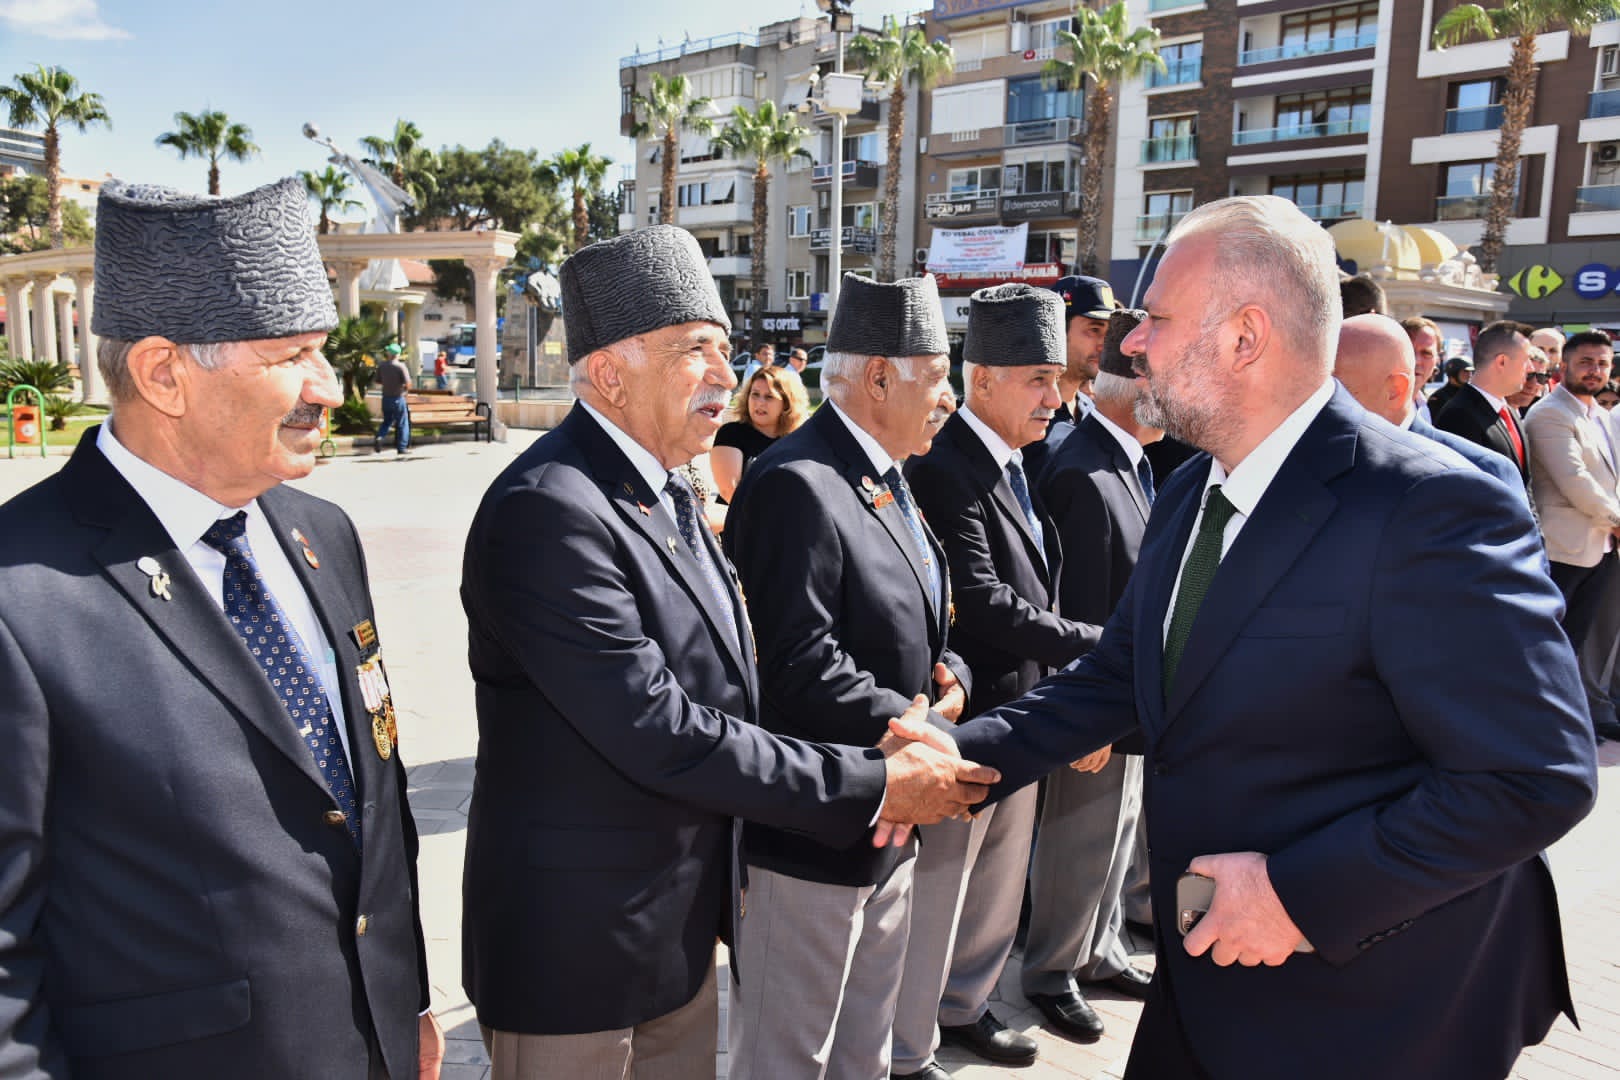 Başkan Vekili Pehlivan, Gaziler Günün'nde konuştu: "El Birliğiyle Çalışmalıyız"